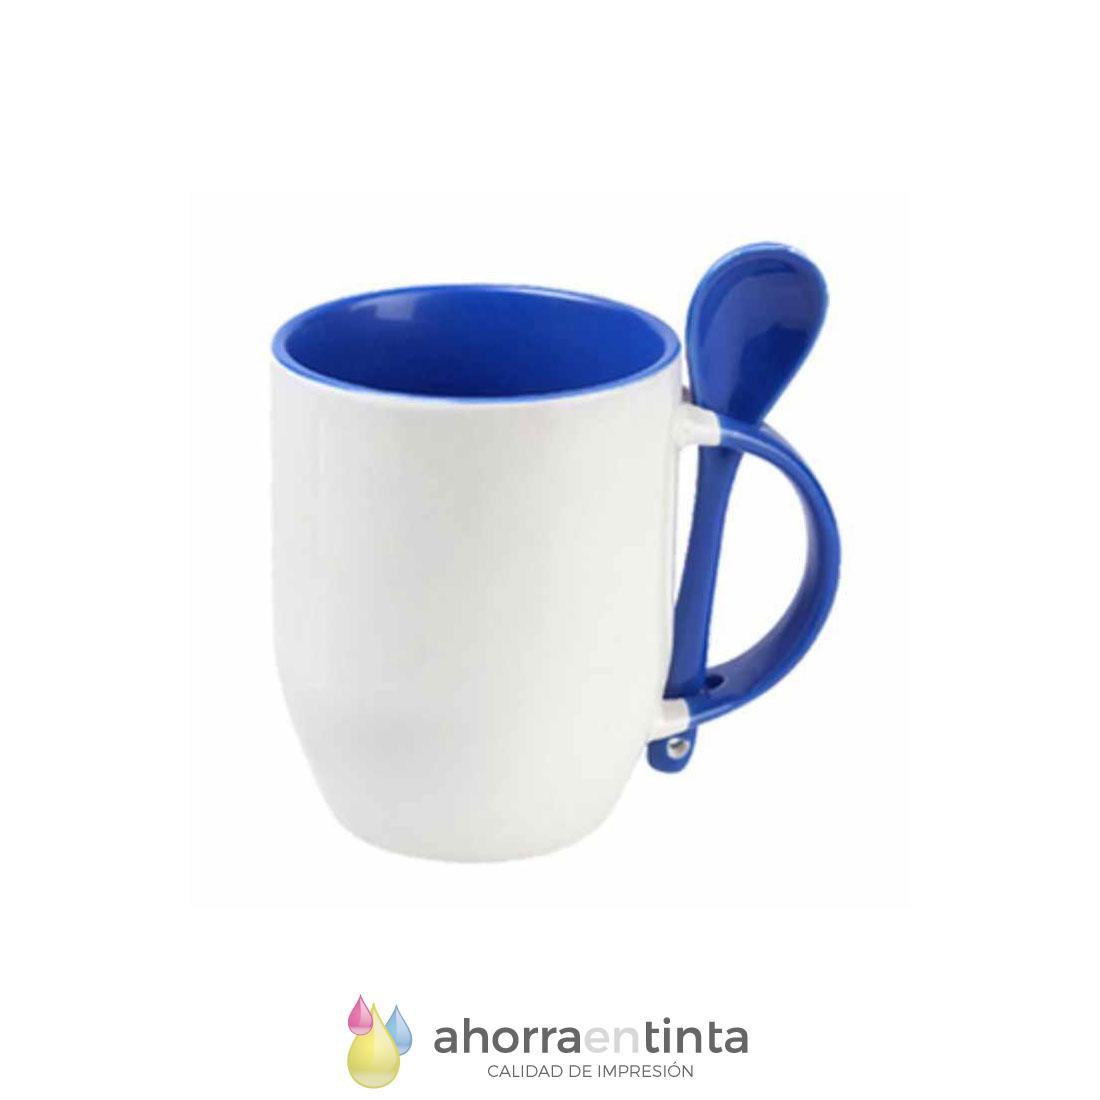 Foto de producto Taza de cerámica color azul con cucharilla